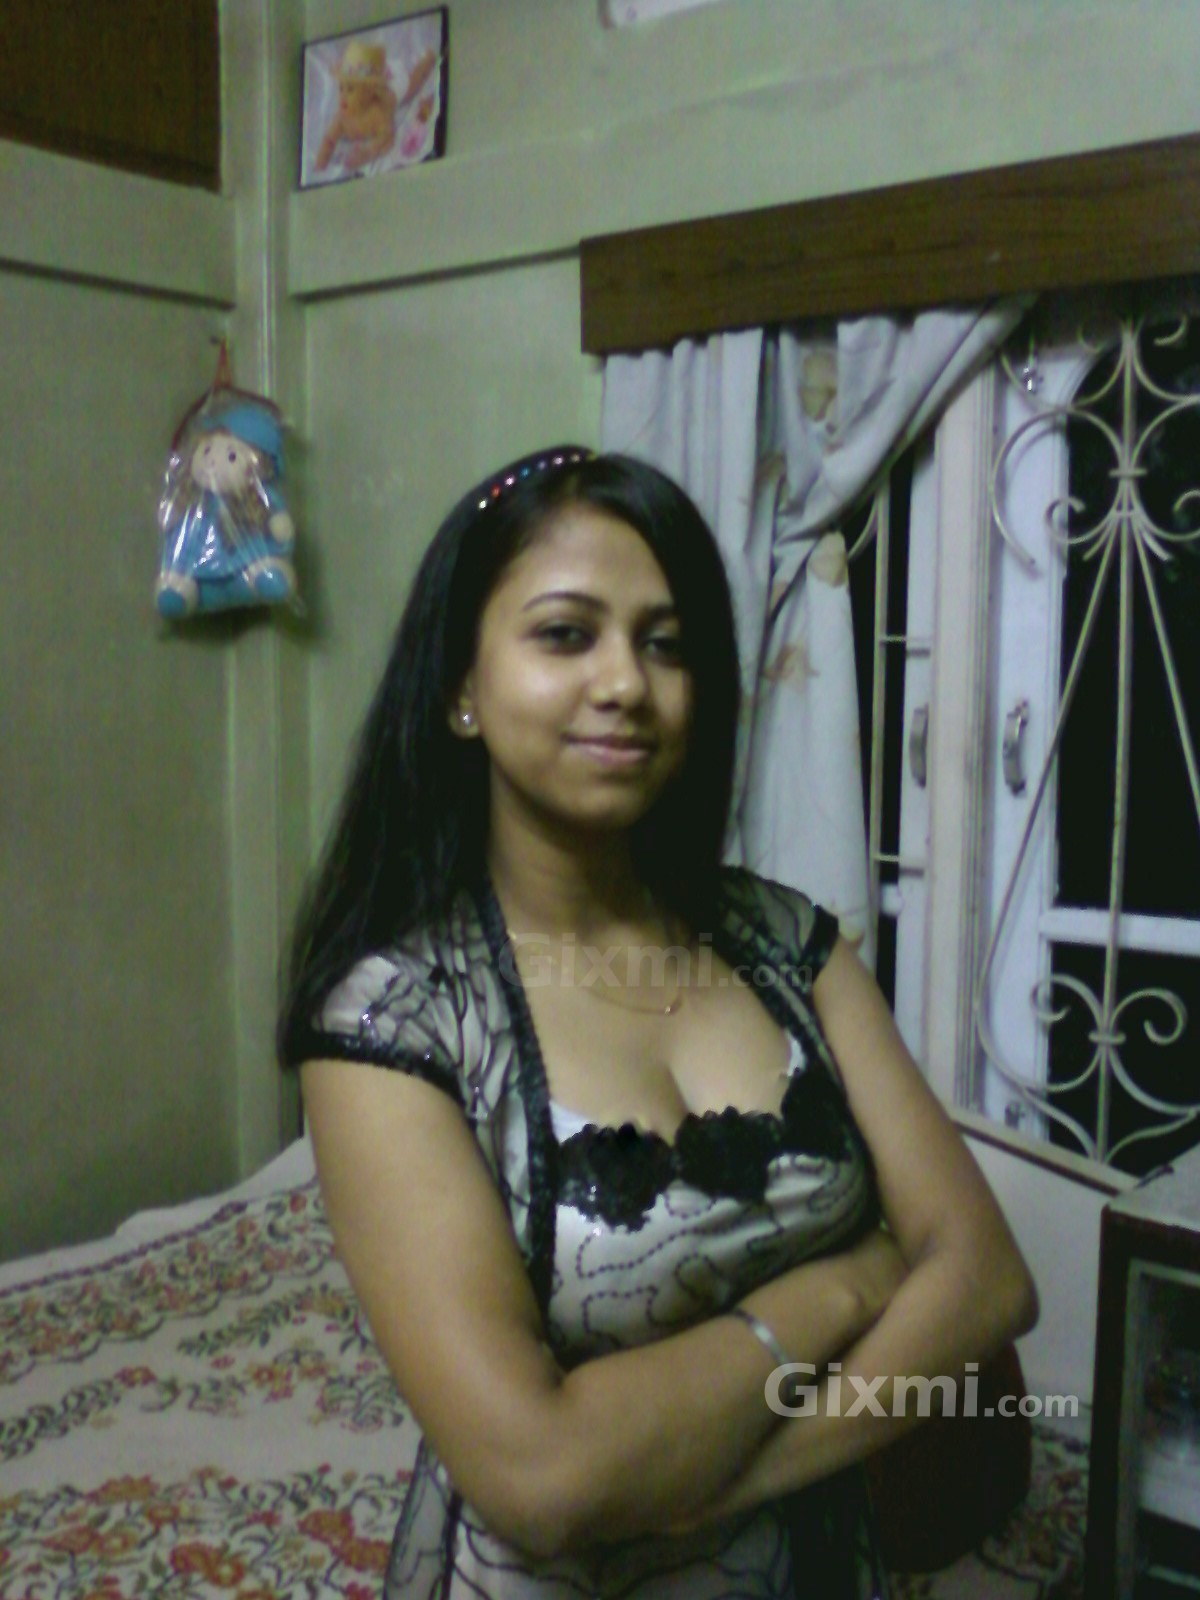 http://2.bp.blogspot.com/-KvATykQgxRs/TkbSM4Ot5KI/AAAAAAAAARA/UZbz5Wmd8a8/s1600/dhaka-girl-bangladesh.jpg